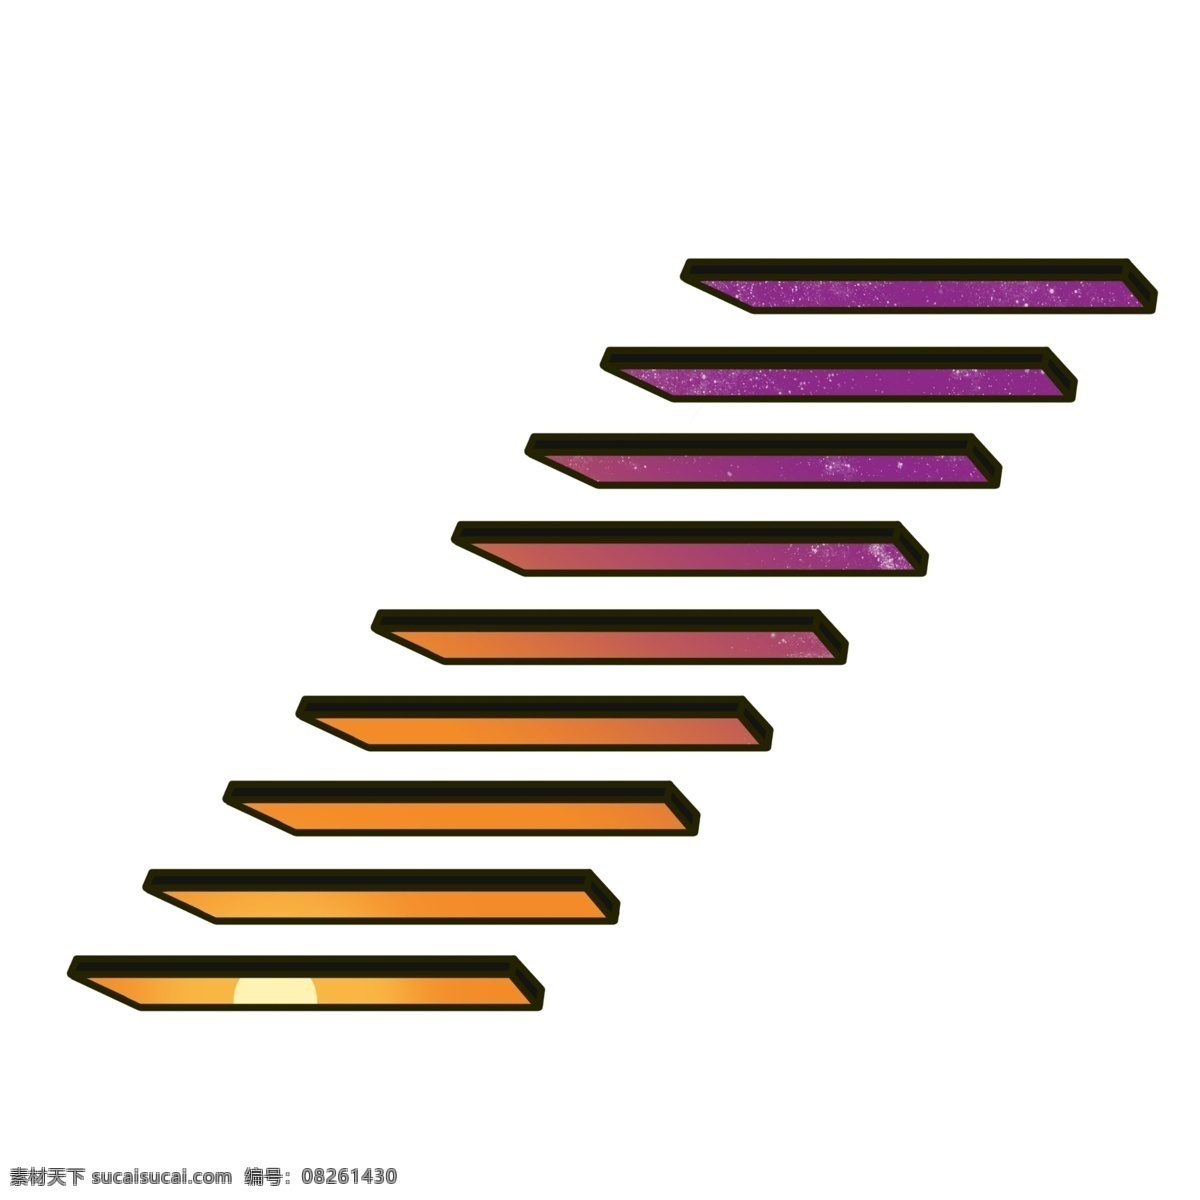 紫 黄色 楼梯 图案 插图 高高的楼梯 黄色楼梯 紫色楼梯 楼梯插画 攀爬工具 登高帮手 装饰图案 产品平台